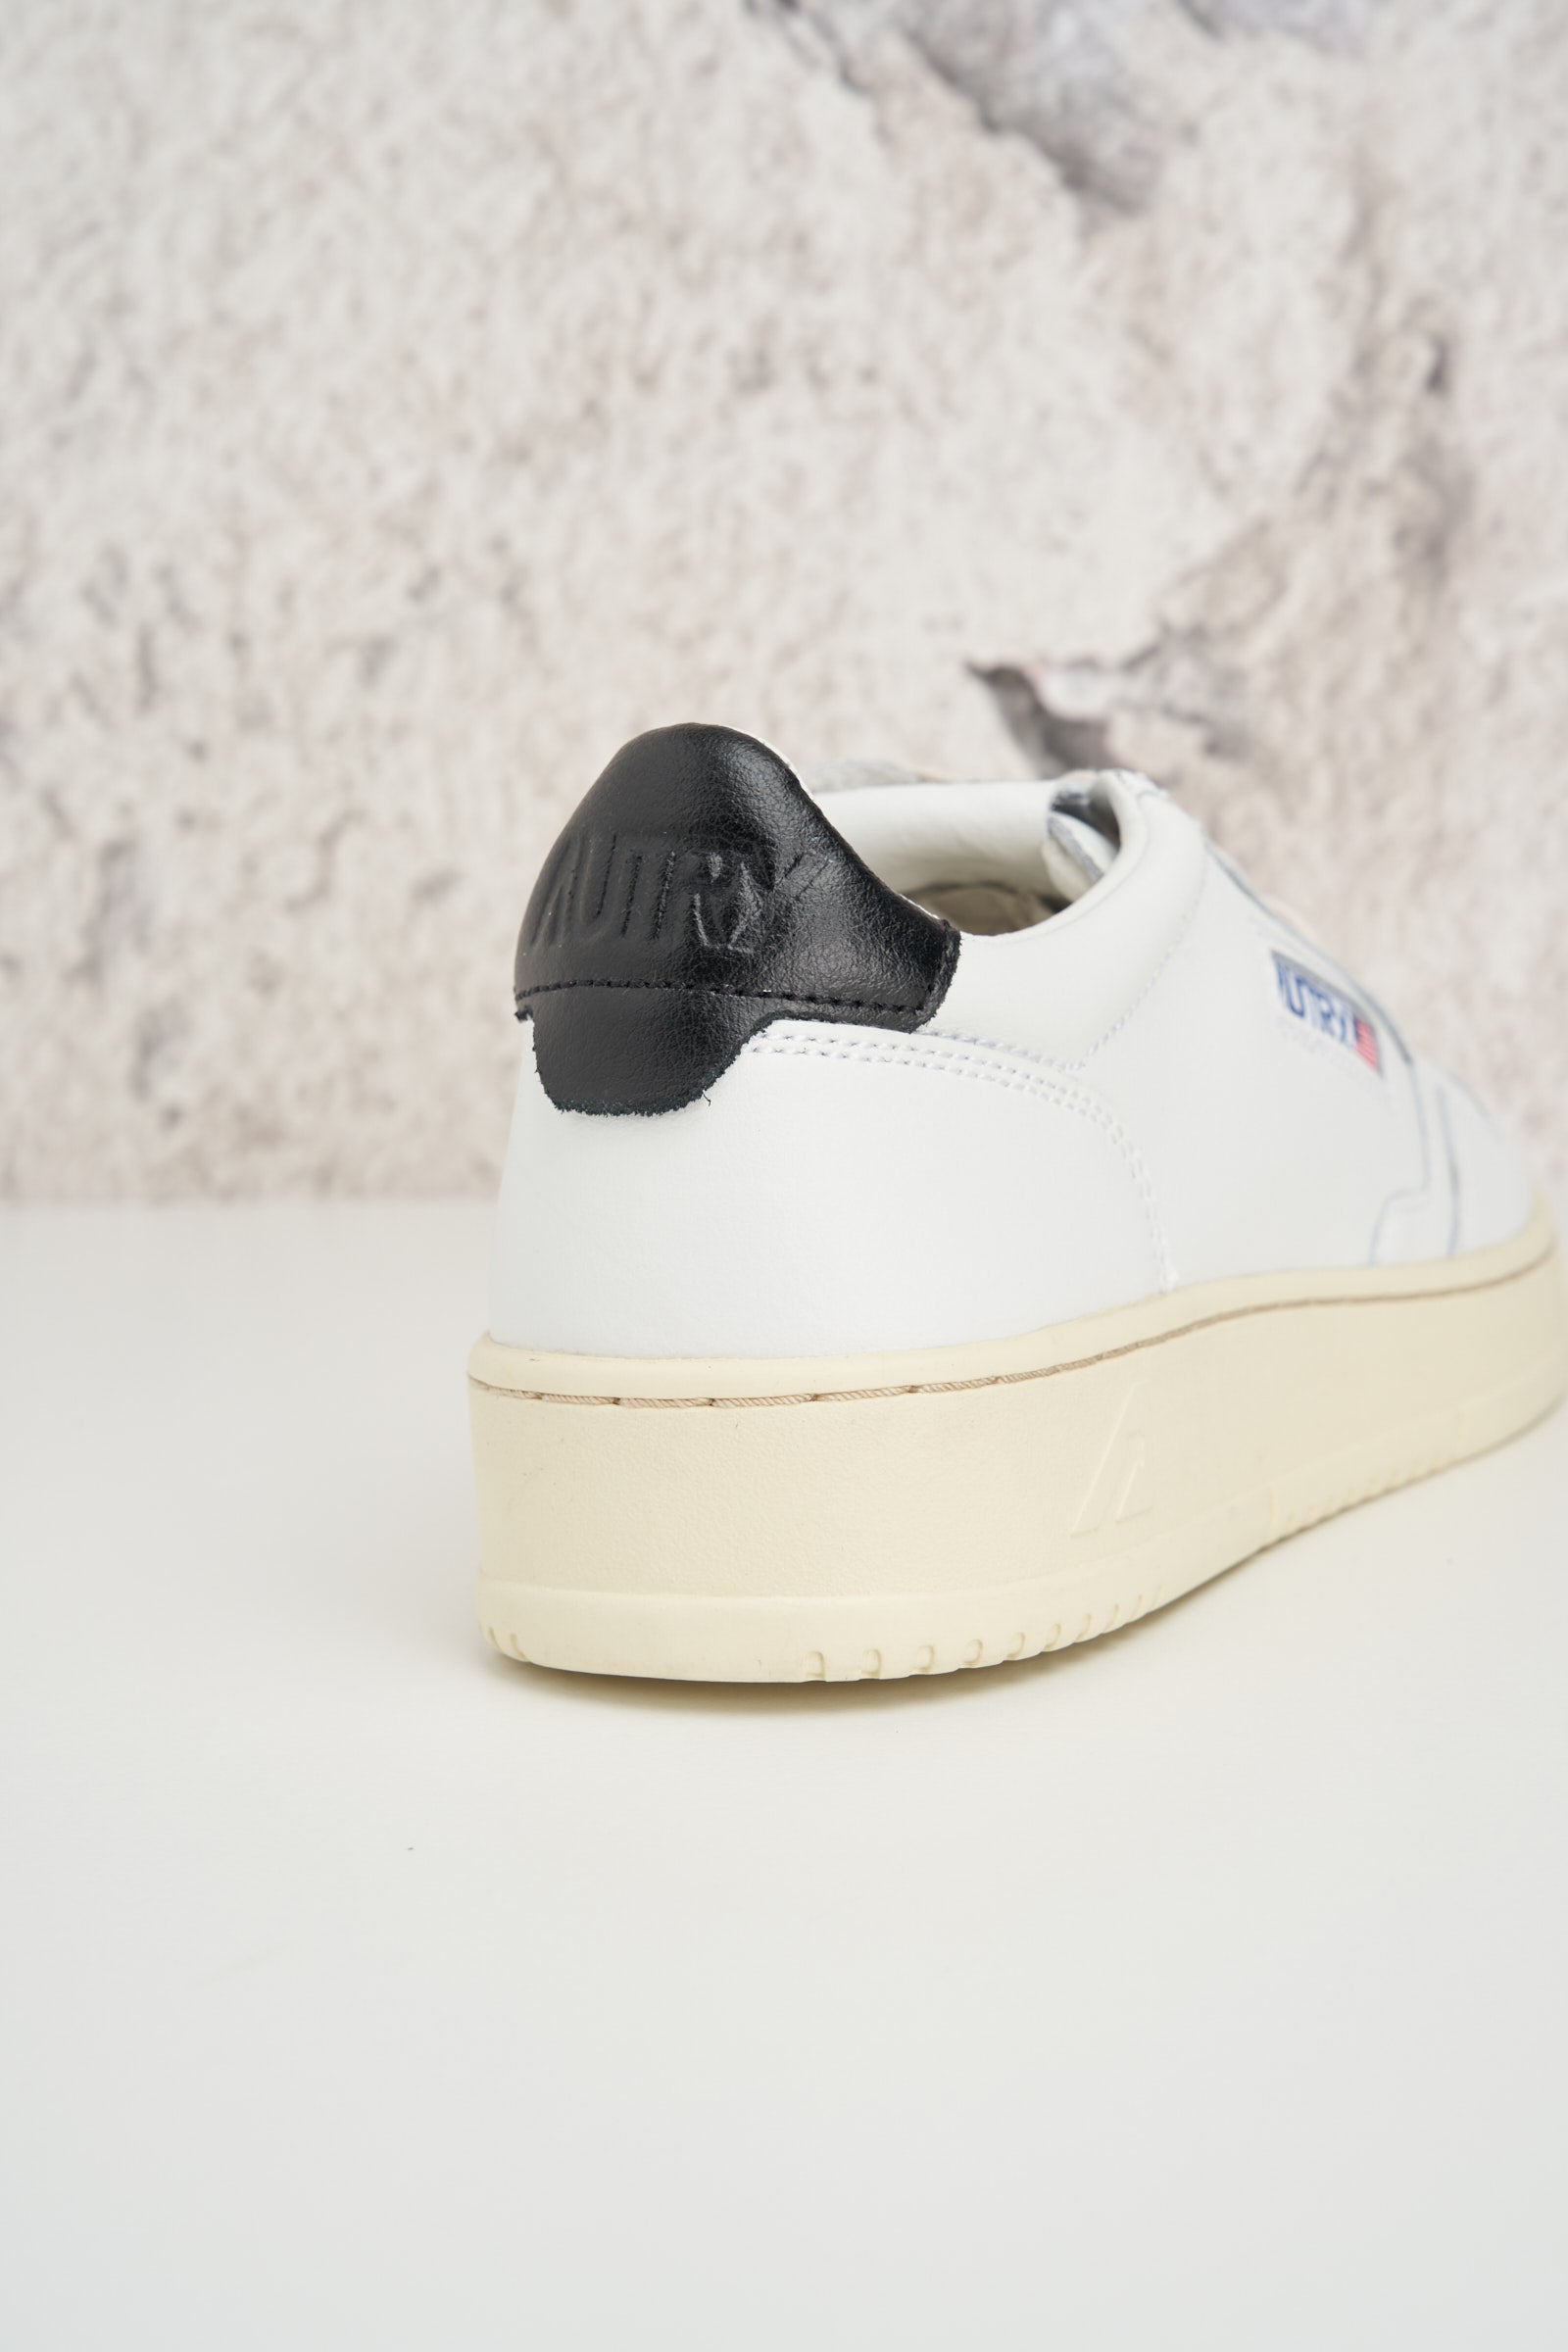  Autry Sneaker Tallonette Nera Nero Uomo - 5